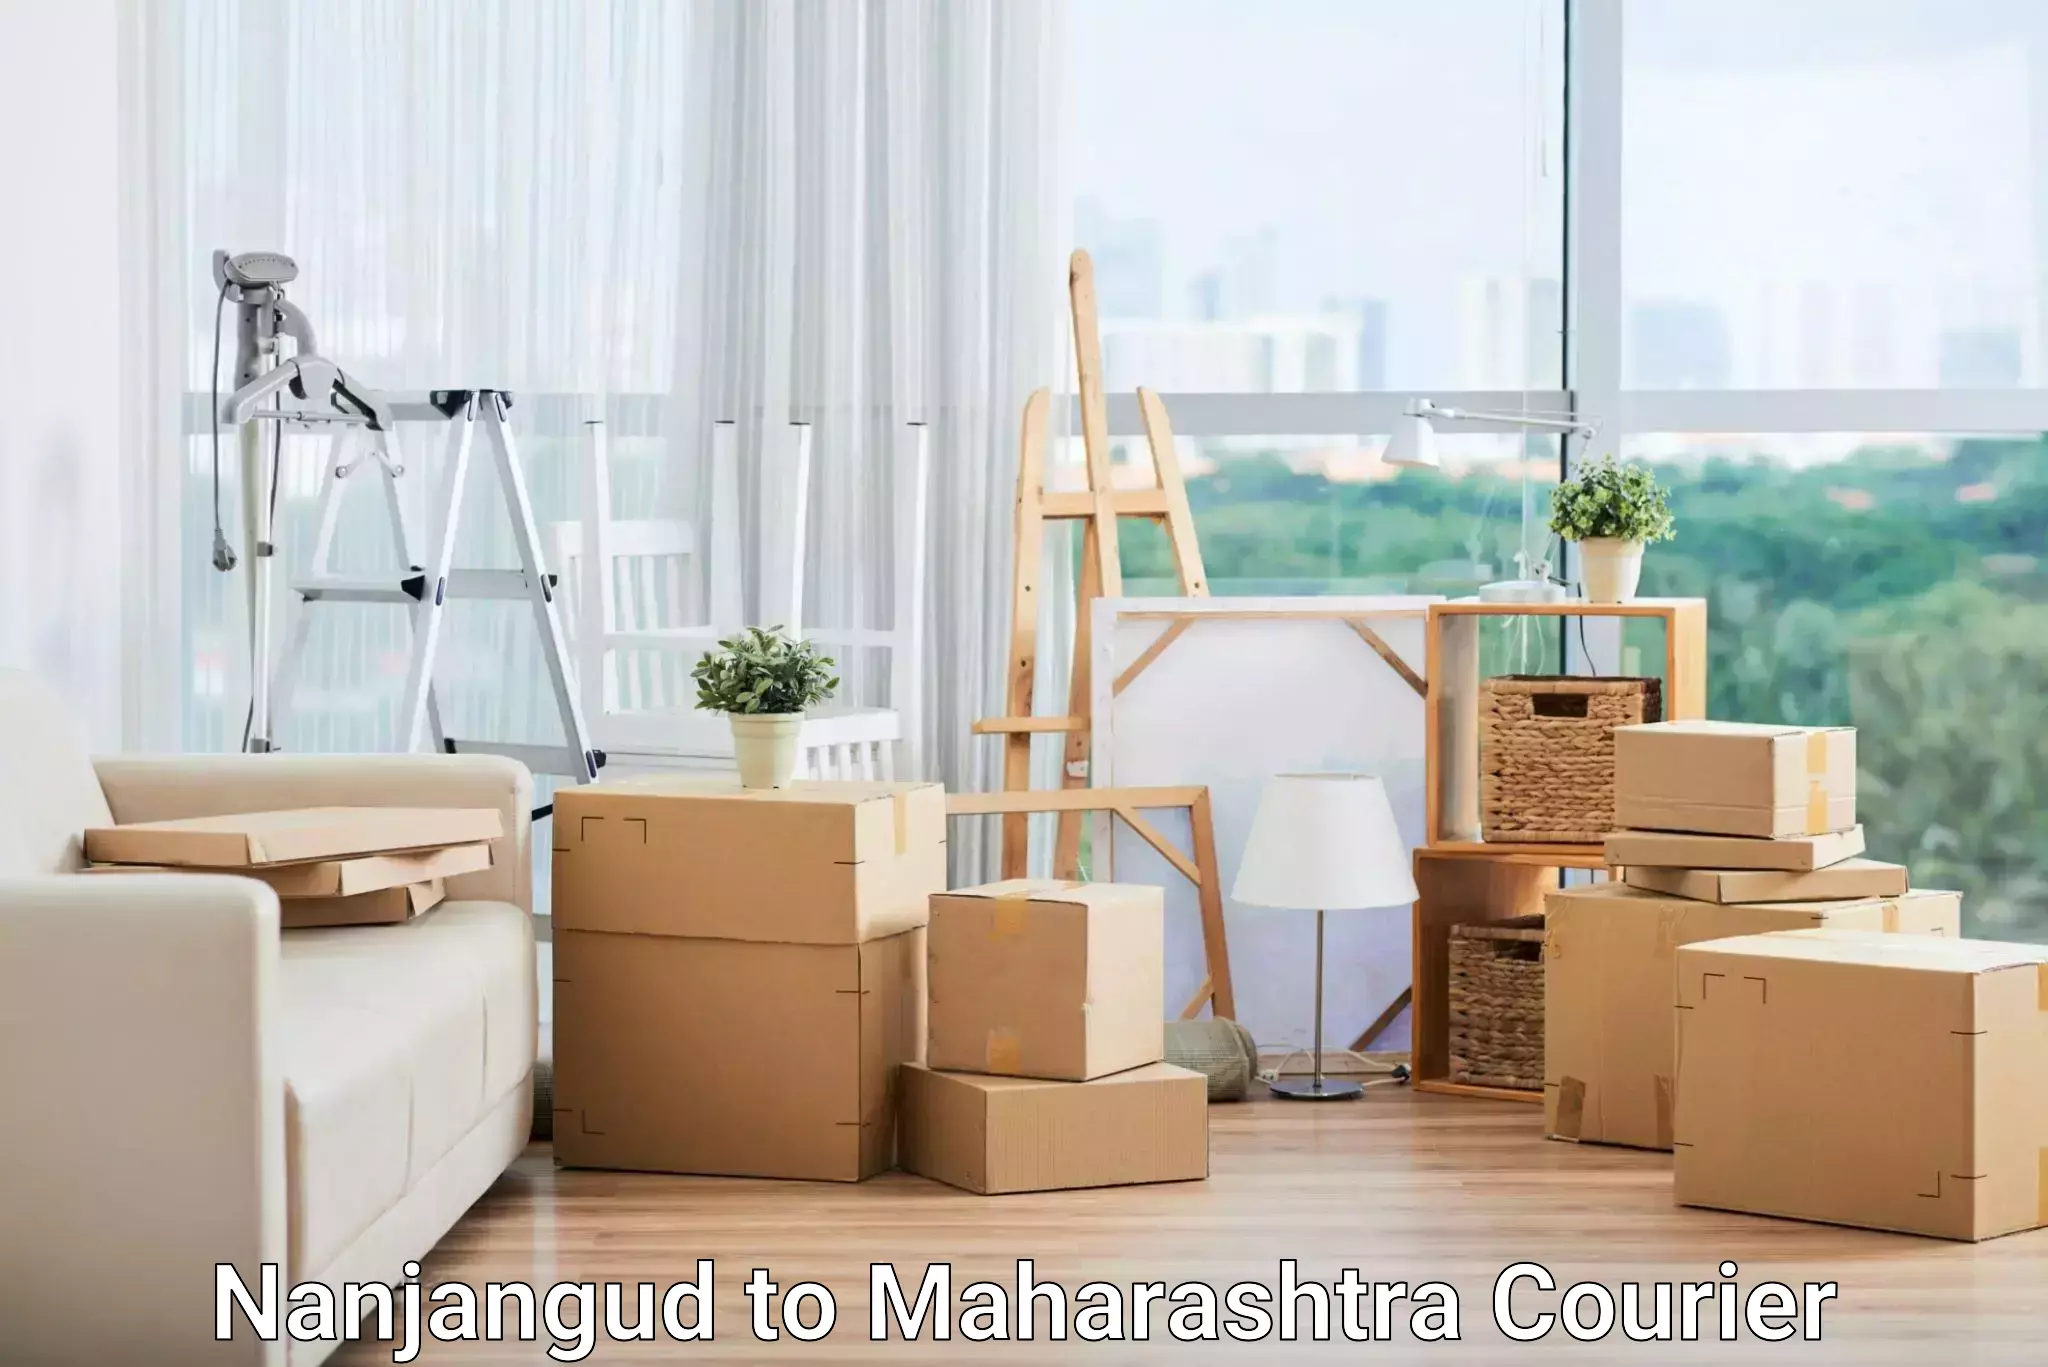 Same-day delivery options Nanjangud to Maharashtra